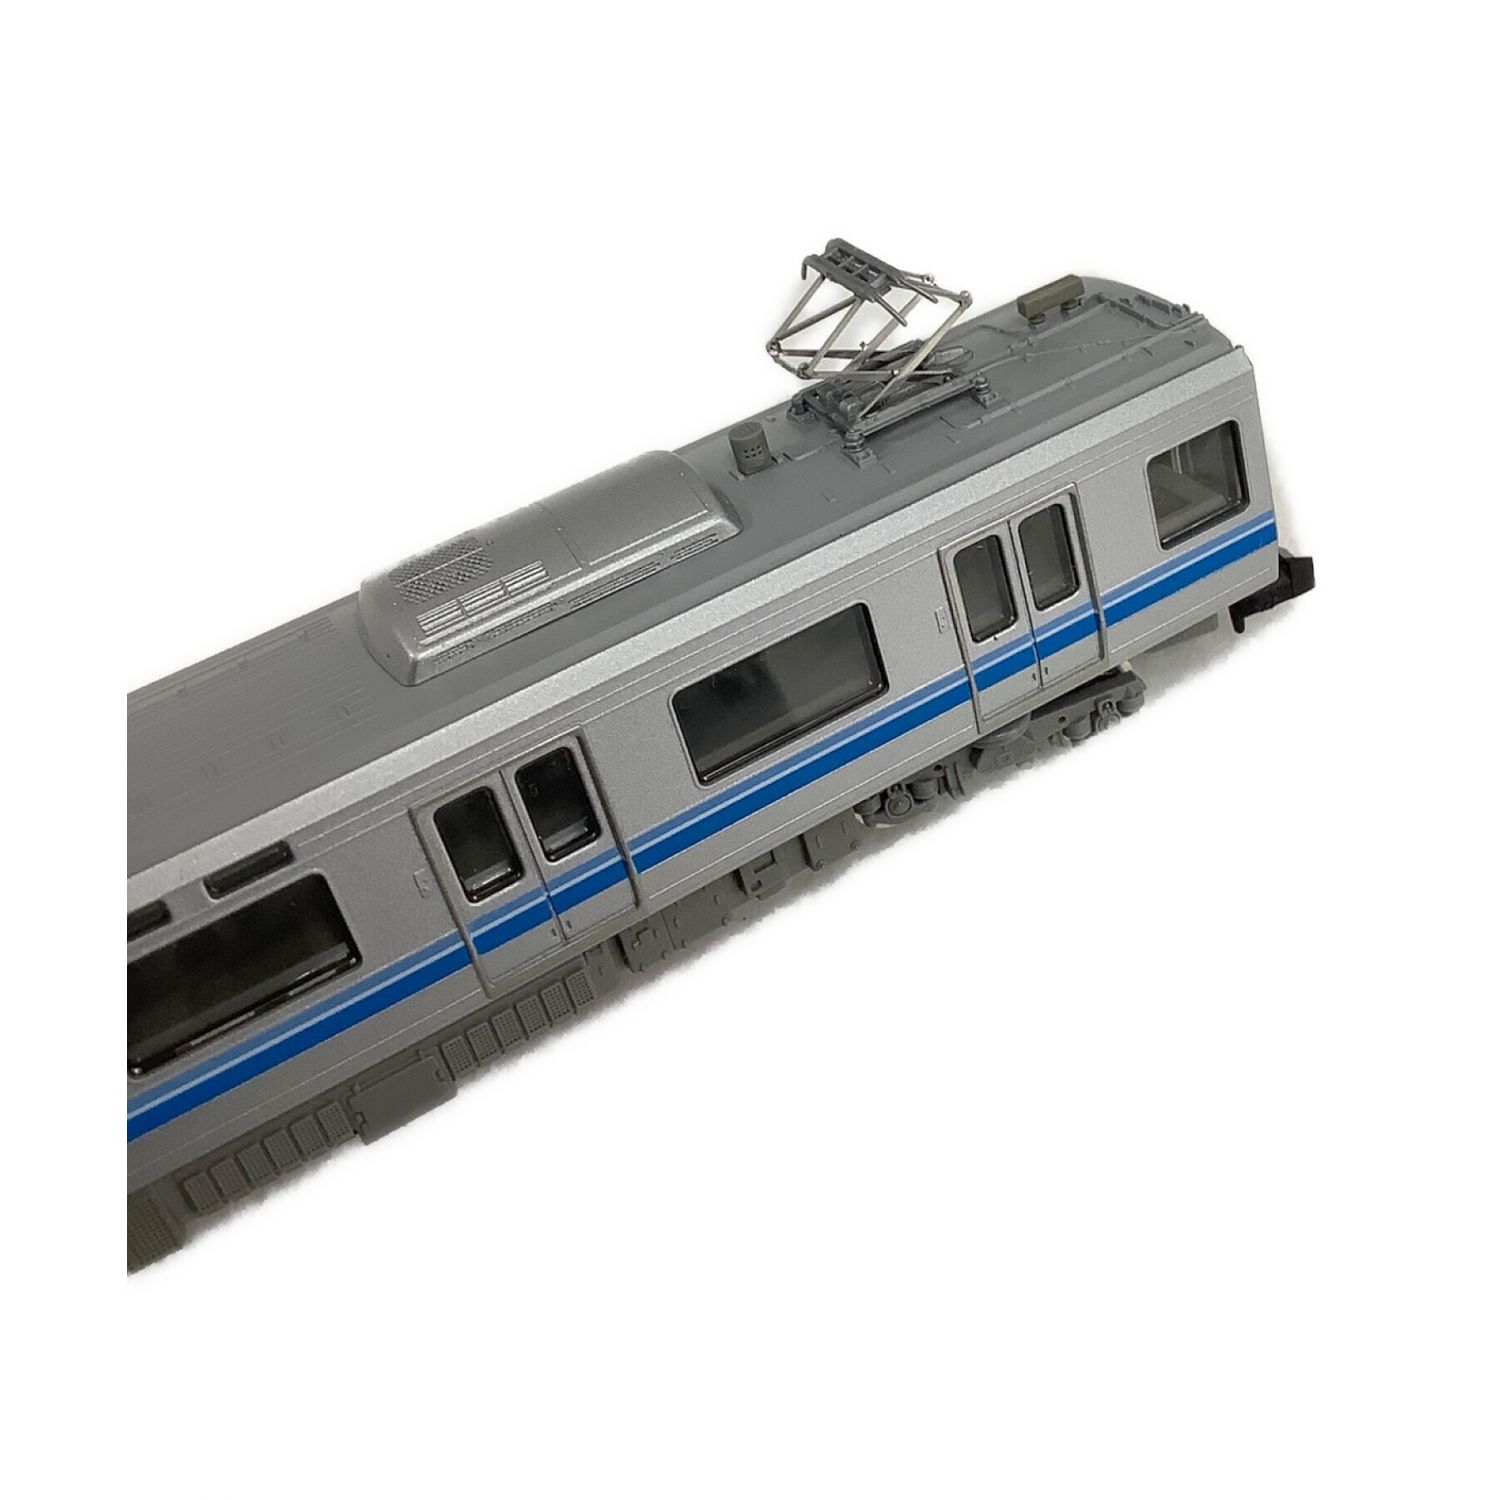 直売新品TOMIX Nゲージ 92224 JR207 1000系通勤電車(東西線)7両基本セット 車両は美品ですが外箱にダメージあり 付属品は写真が全てです⑱ 通勤形電車